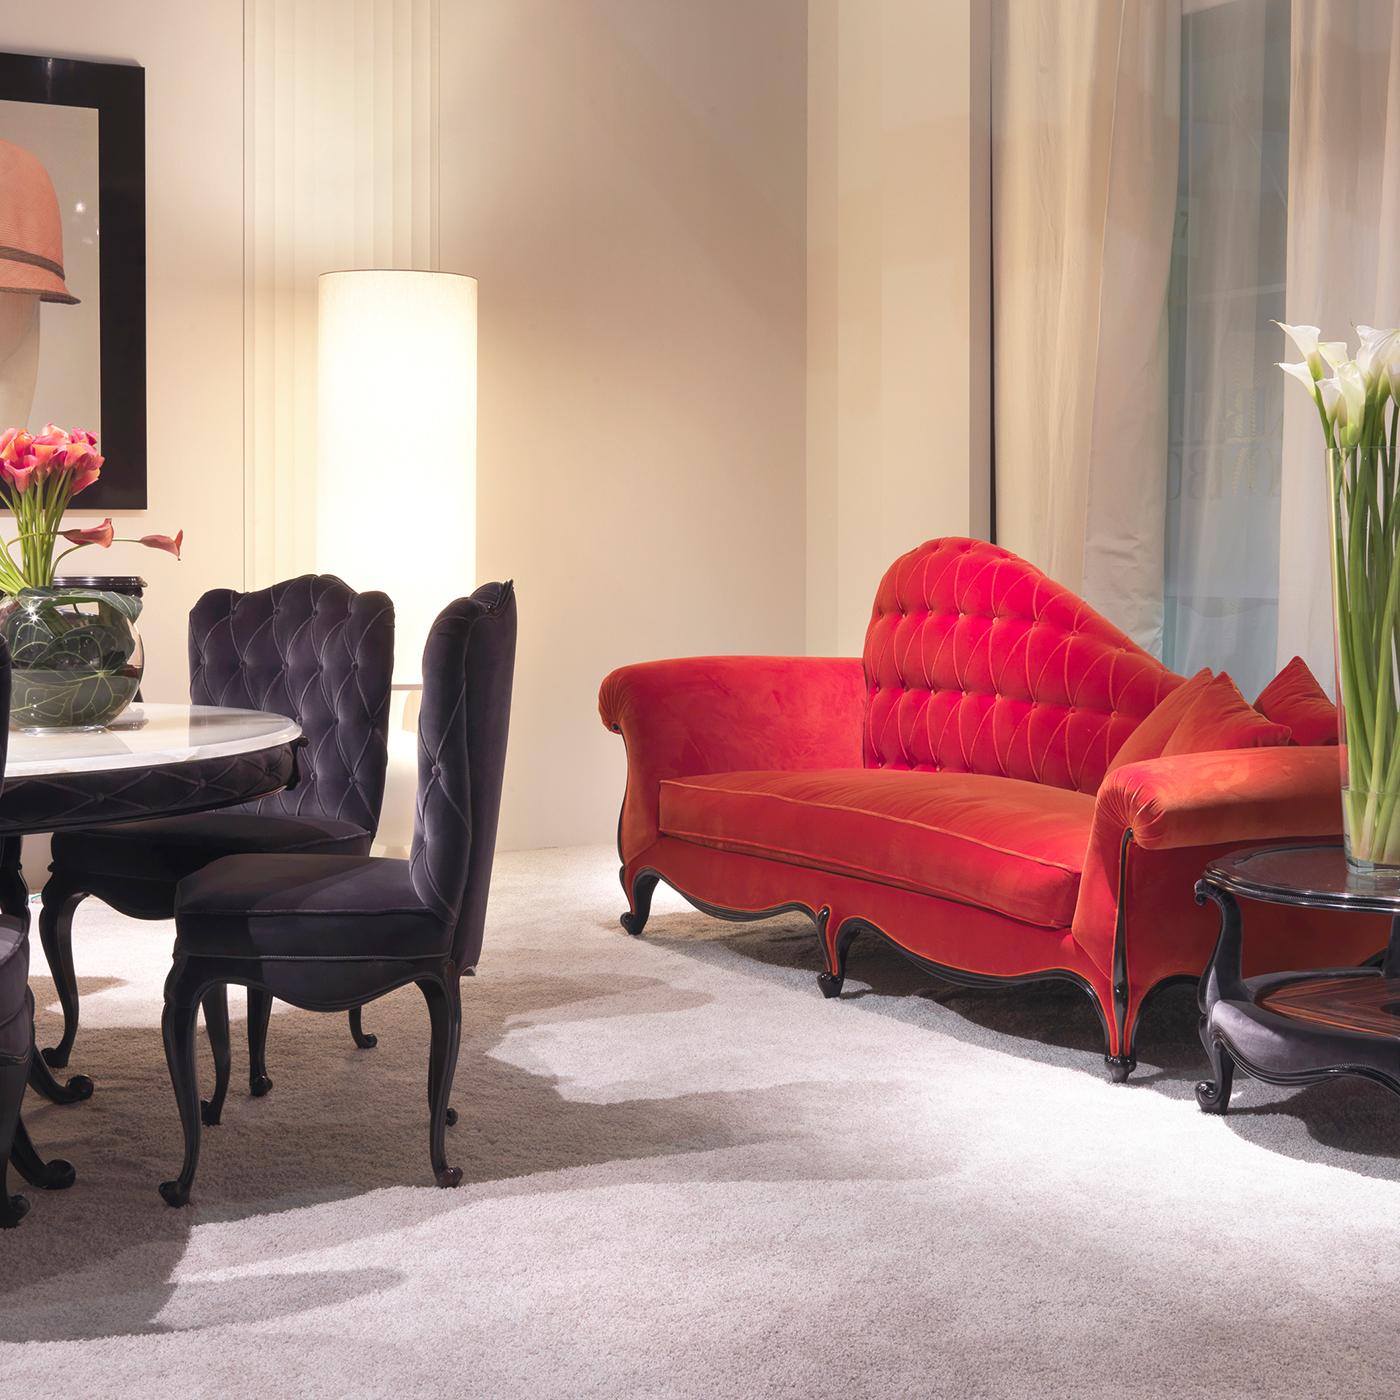 Vintage-inspiriert mit zierlichen dekorativen Details definiert die fesselnde Persönlichkeit dieser stilvollen Dormeuse, die mit einem Samtbezug in flammendem Rot aufwartet. Sein harmonisches, romantisches Profil ergibt sich aus der großzügigen